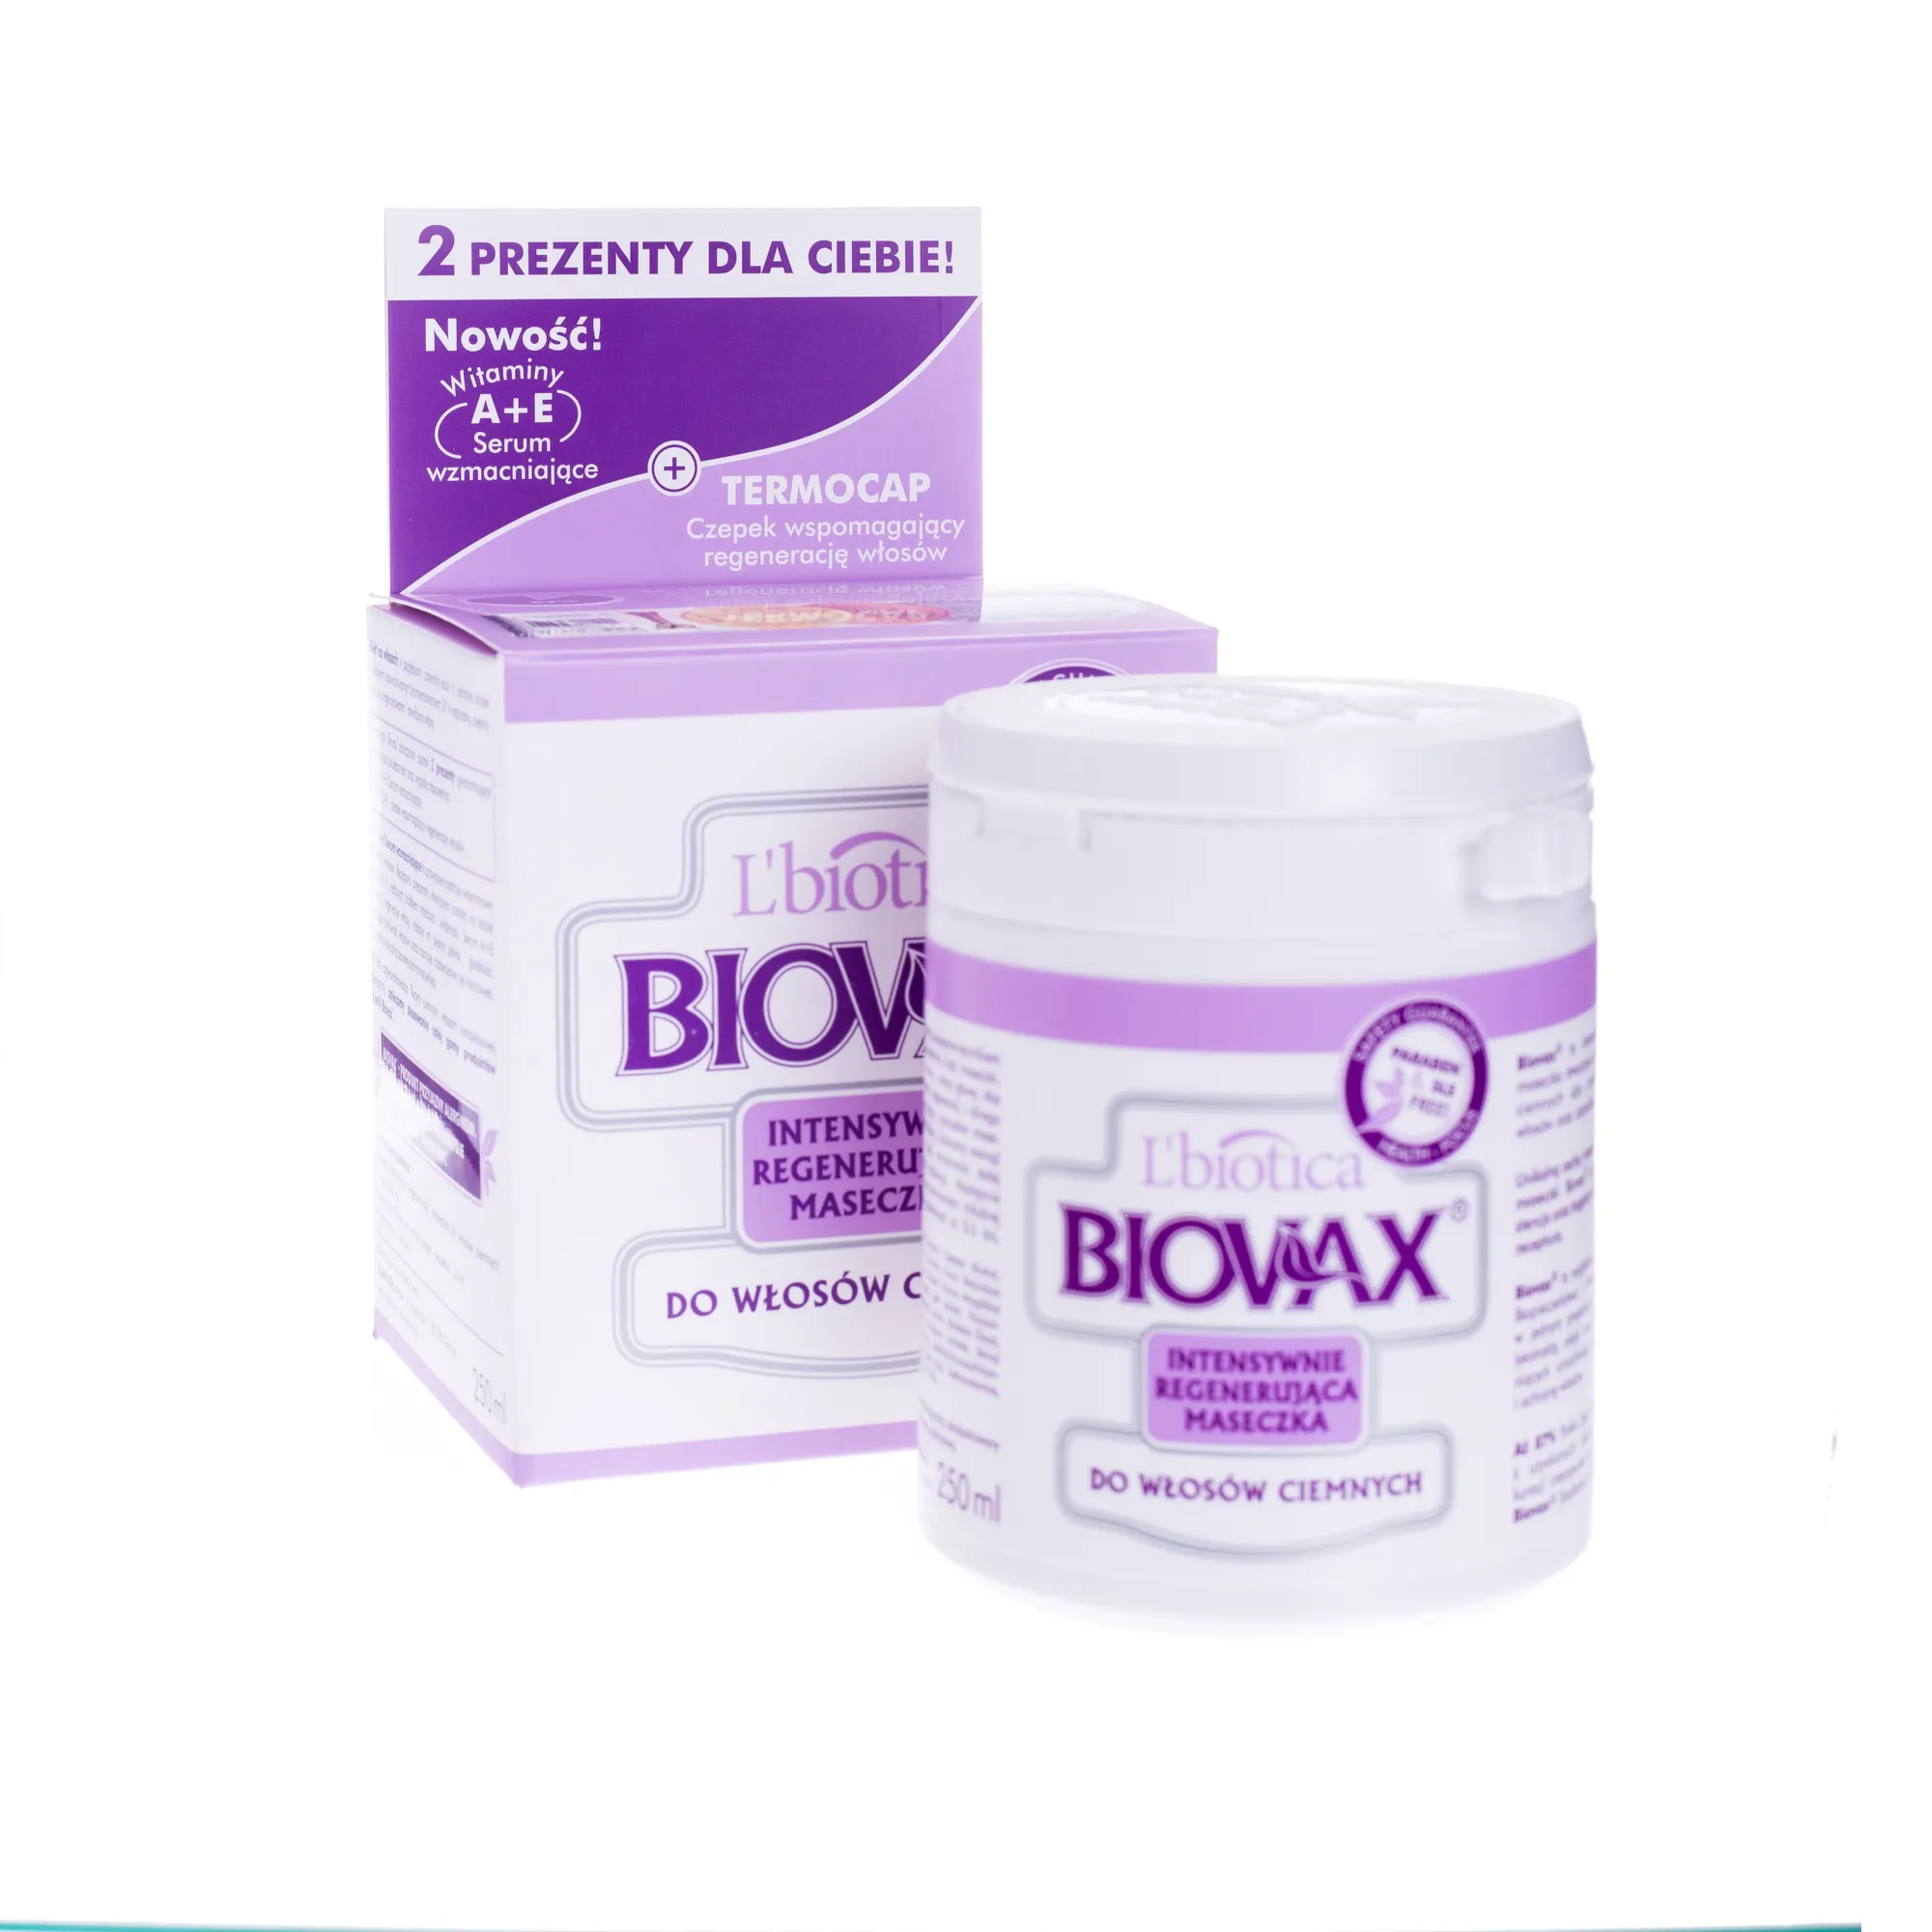 L'Biotica Biovax, intensywnie regenerująca maseczka do włosów ciemnych, 250 ml